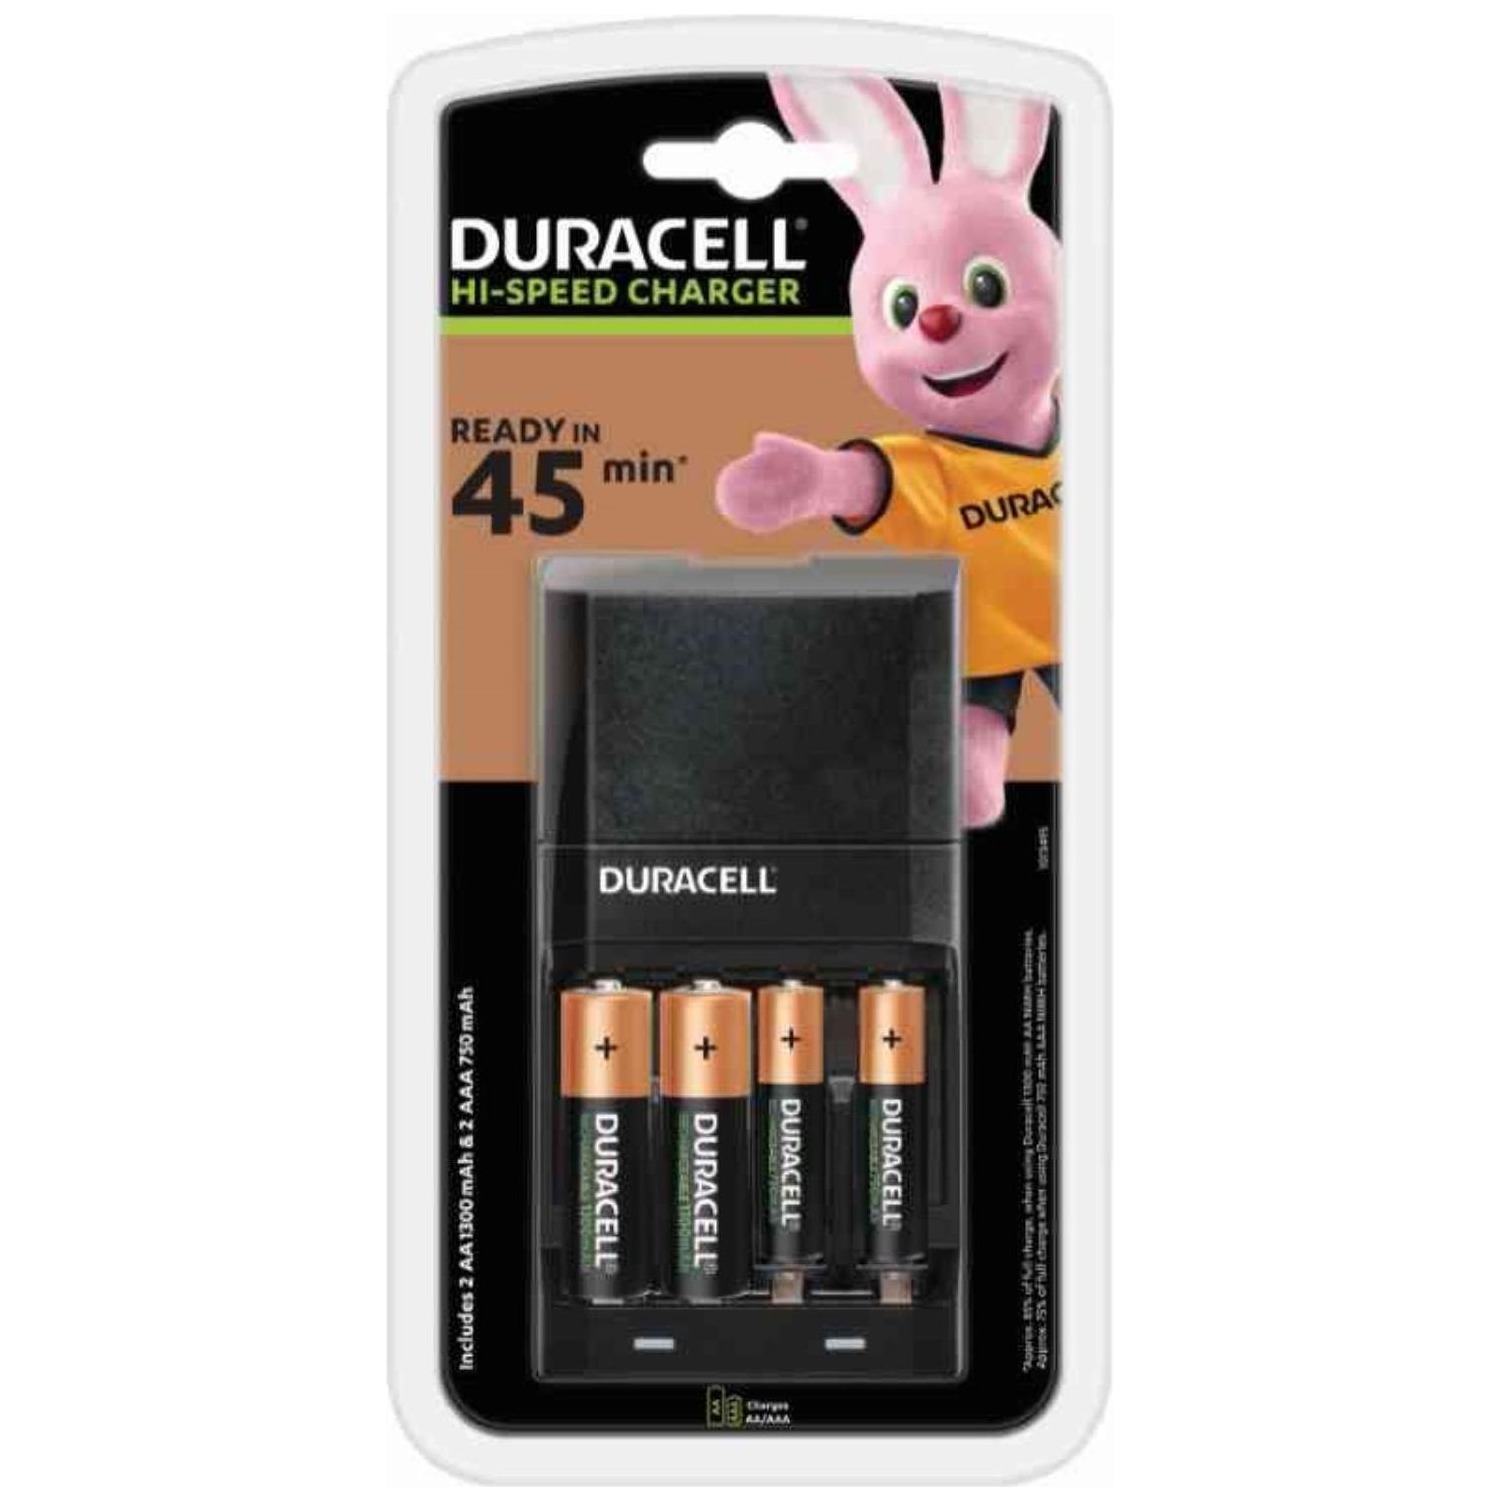 Immagine per Carica batteria Duracell Fast 45 minuti con 2AA e 2AAA da DIMOStore